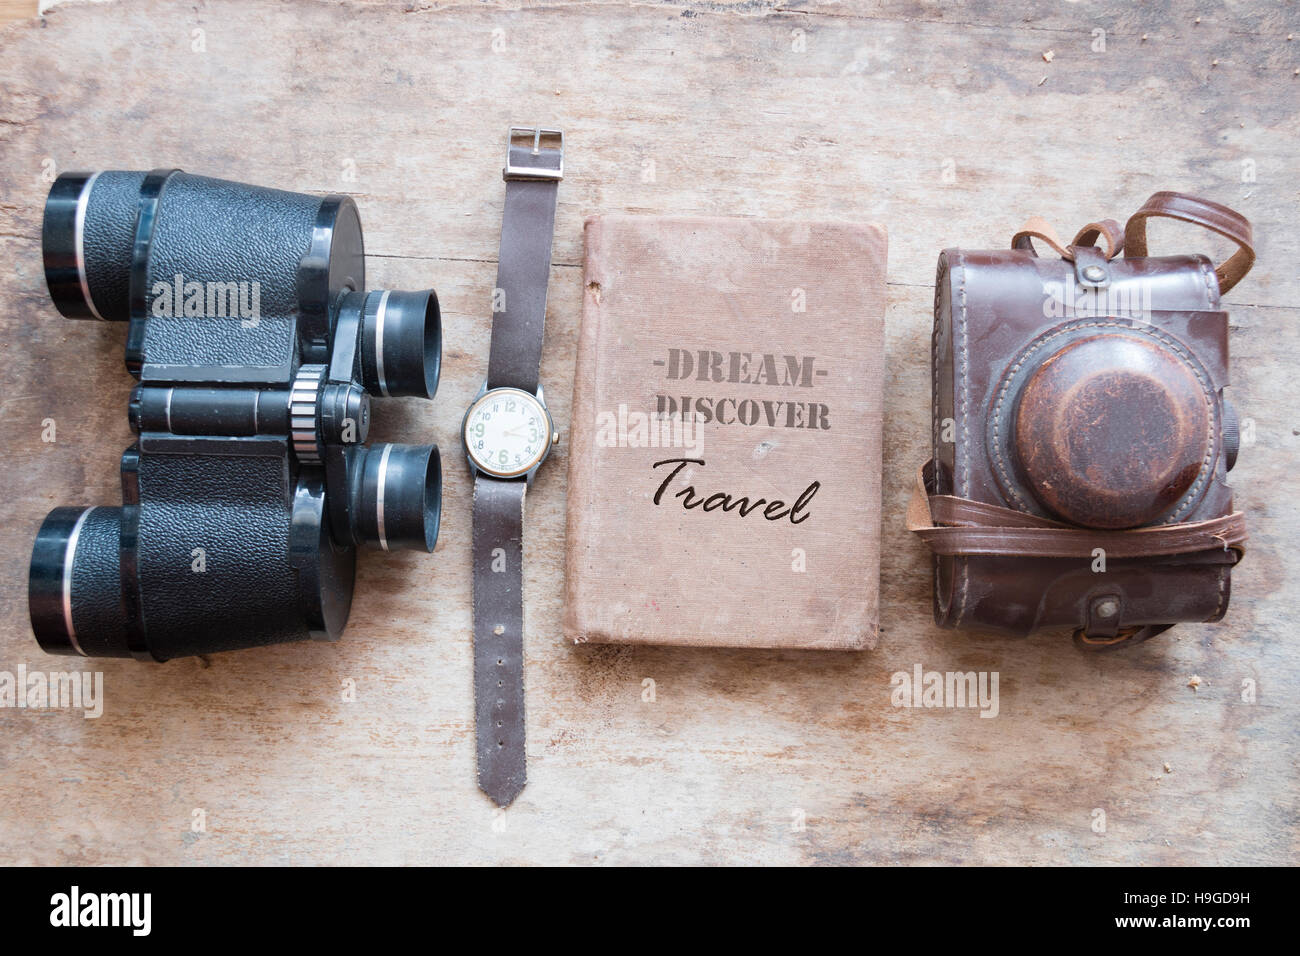 Dream Discover Travel voyage voyage, texte ou idée Banque D'Images